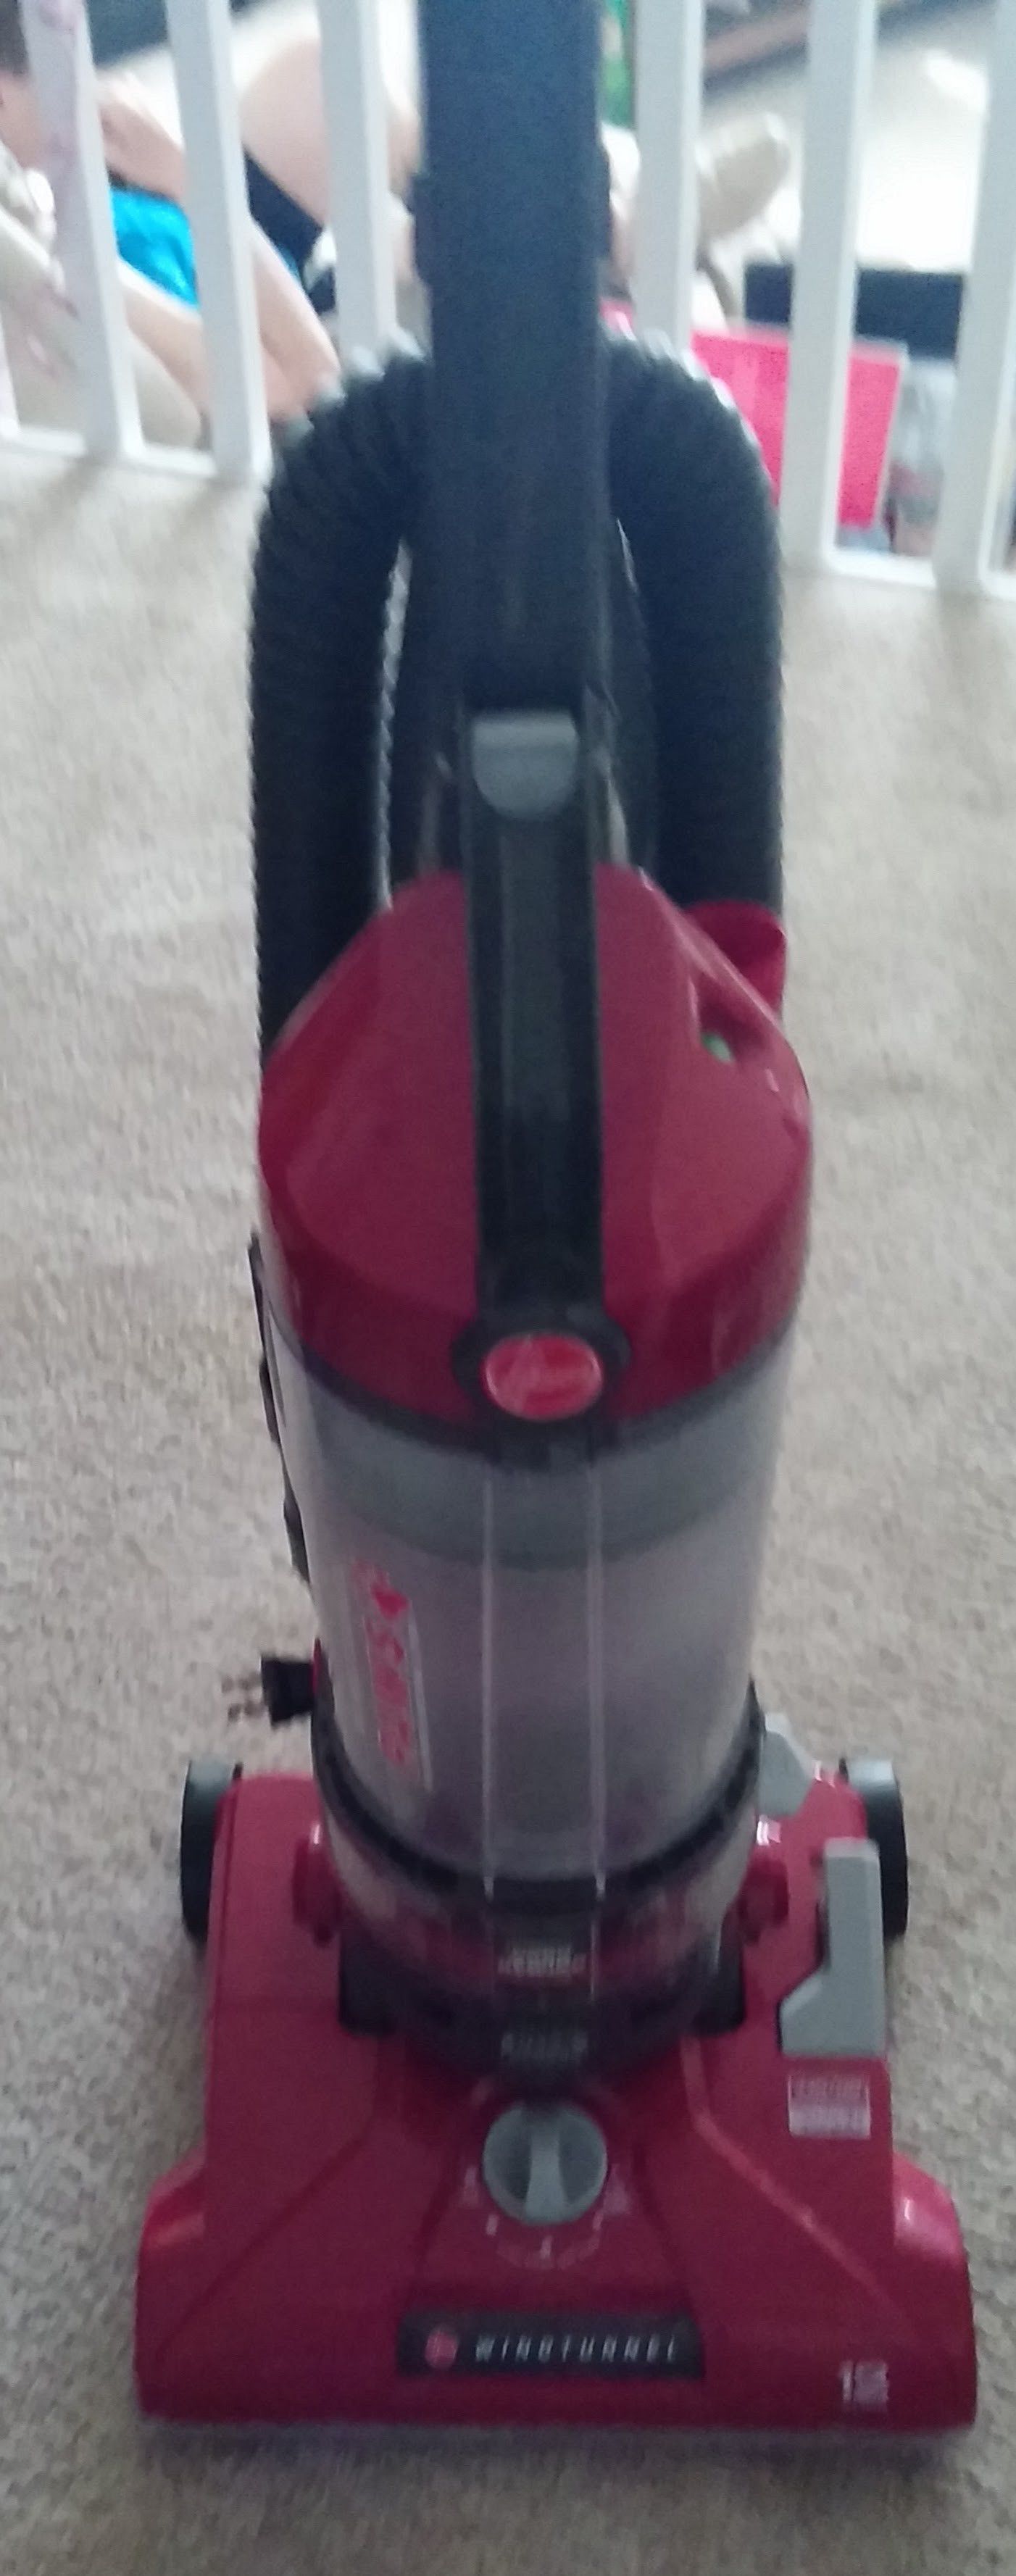 Hoover pet vacuum